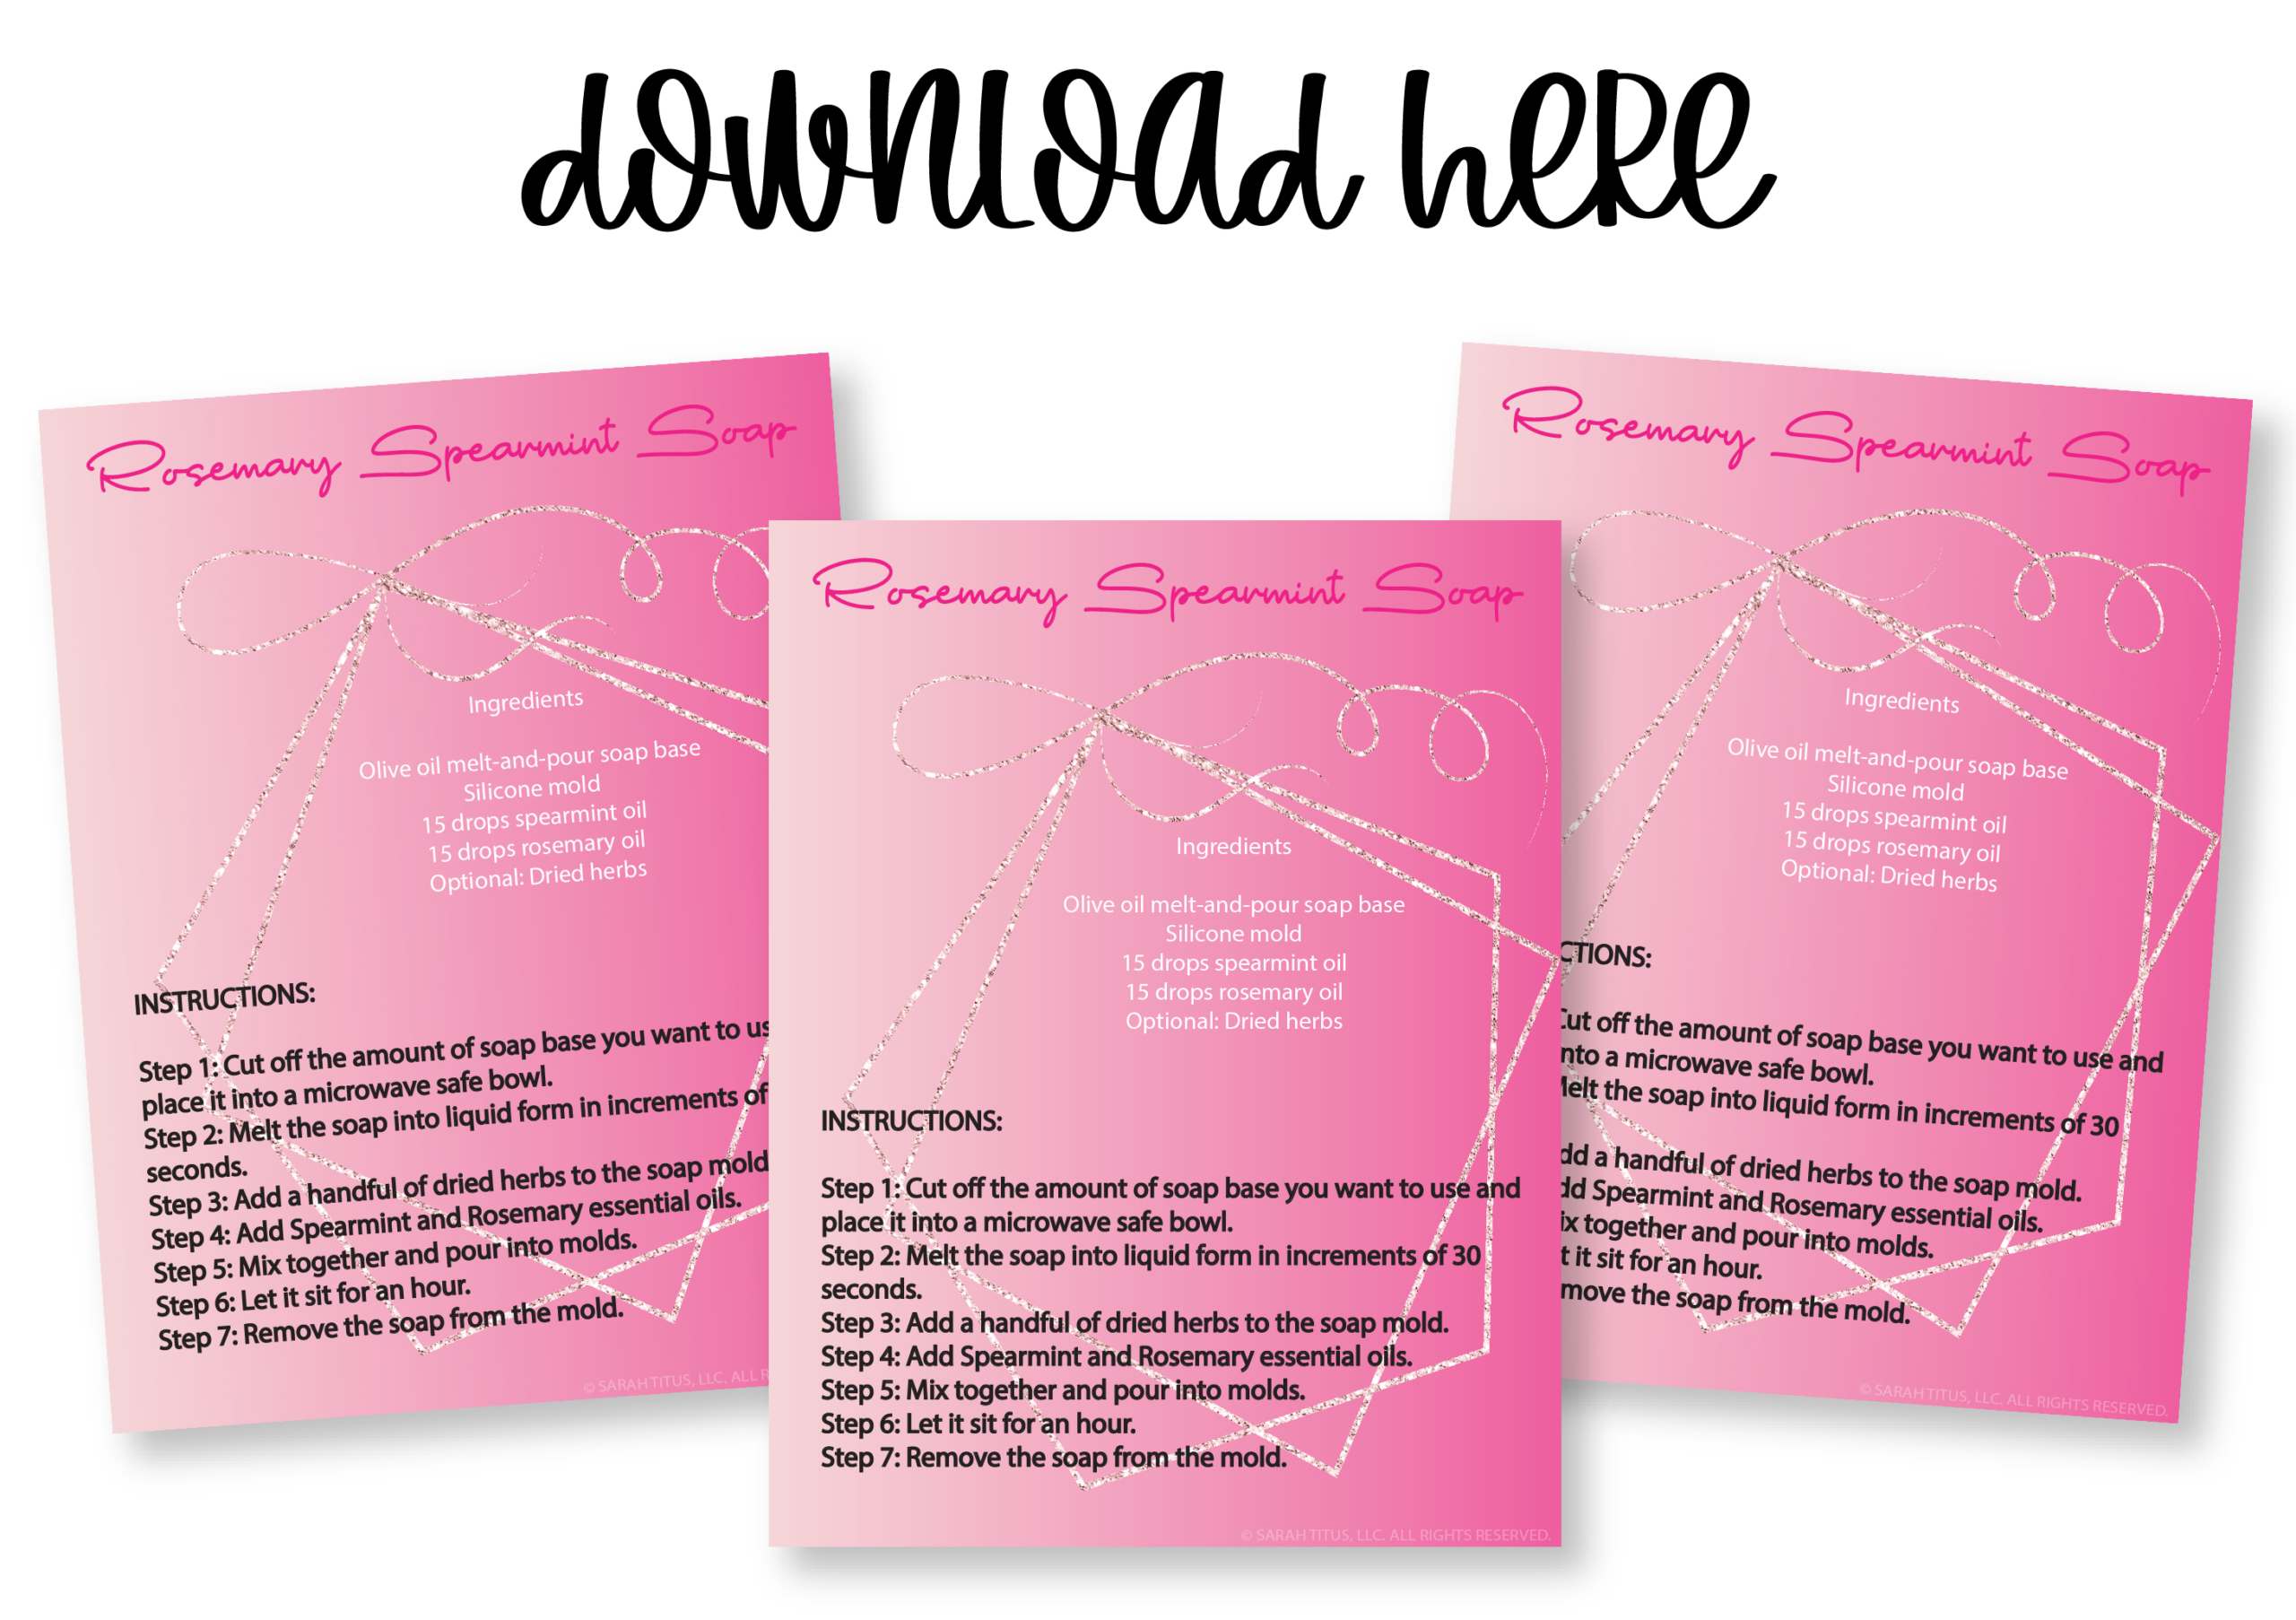 Rosemary Spearmint Soap Recipe PDF